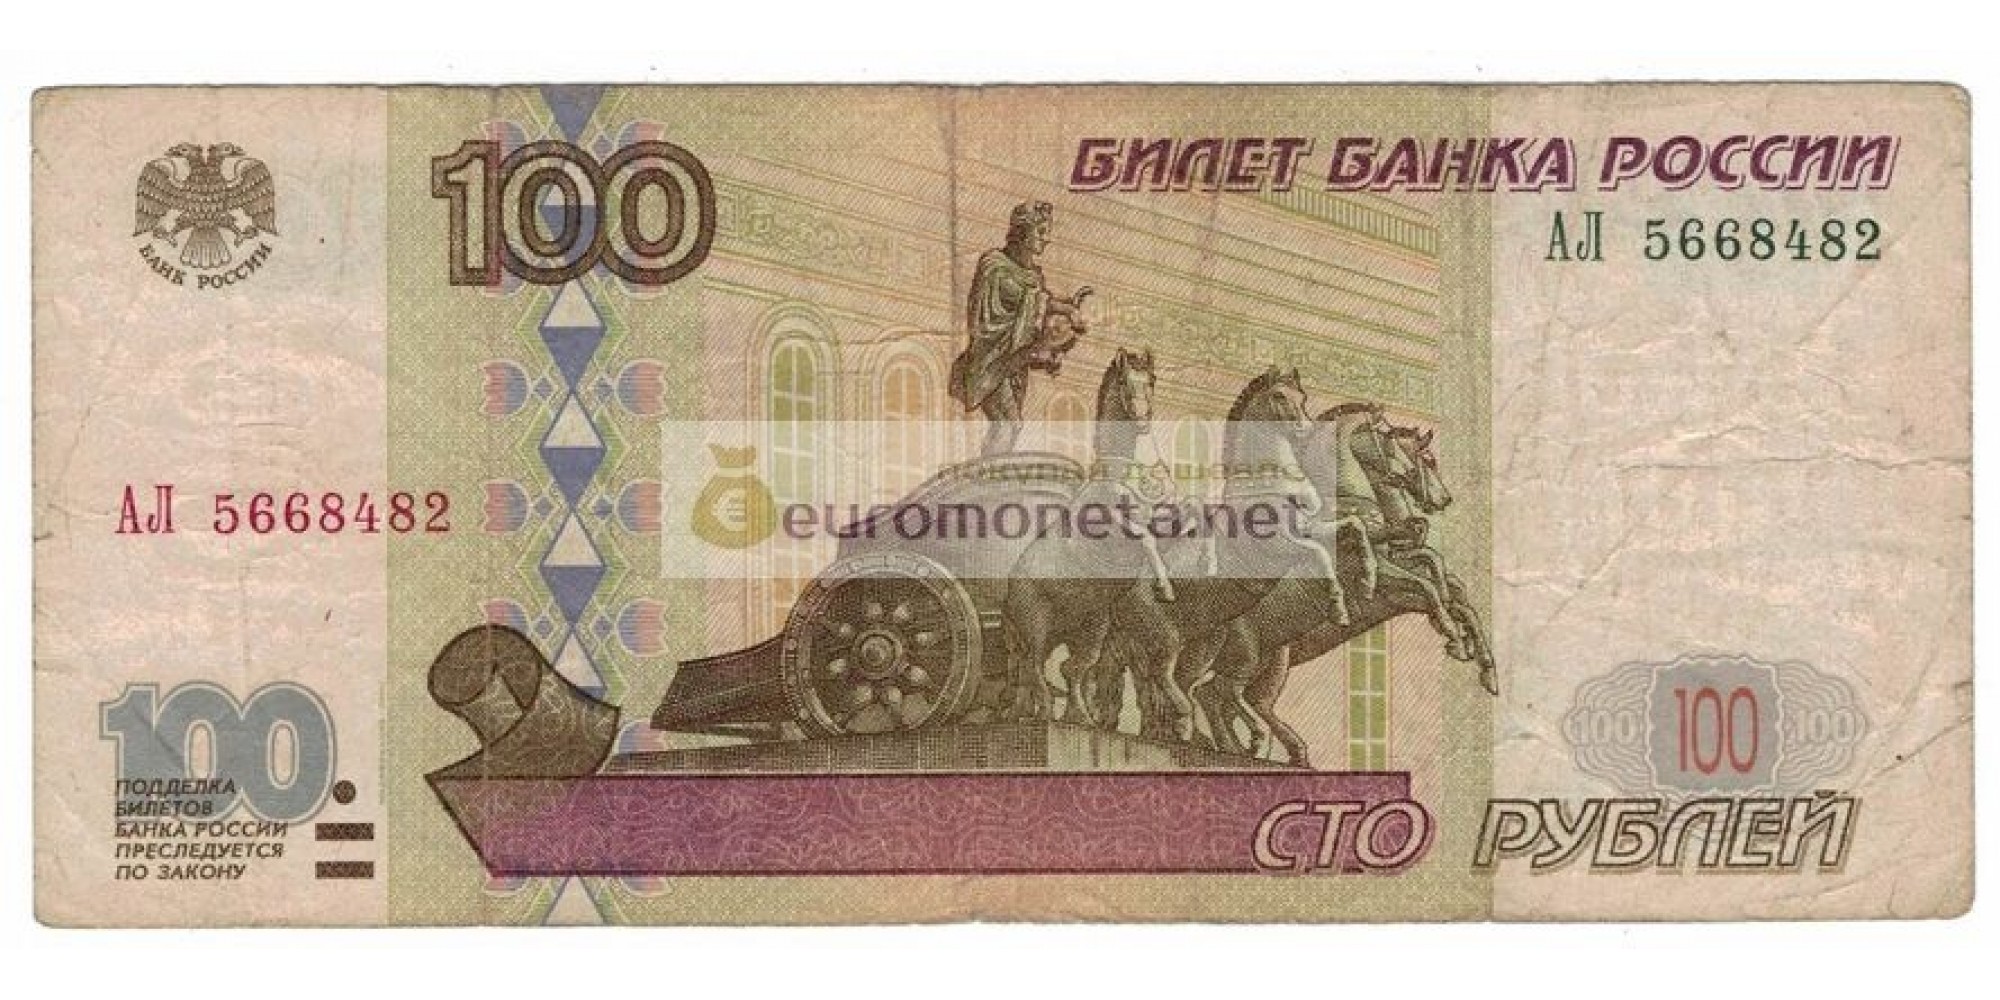 Россия 100 рублей 1997 год модификация 2001 год редкая серия АЛ 5668482